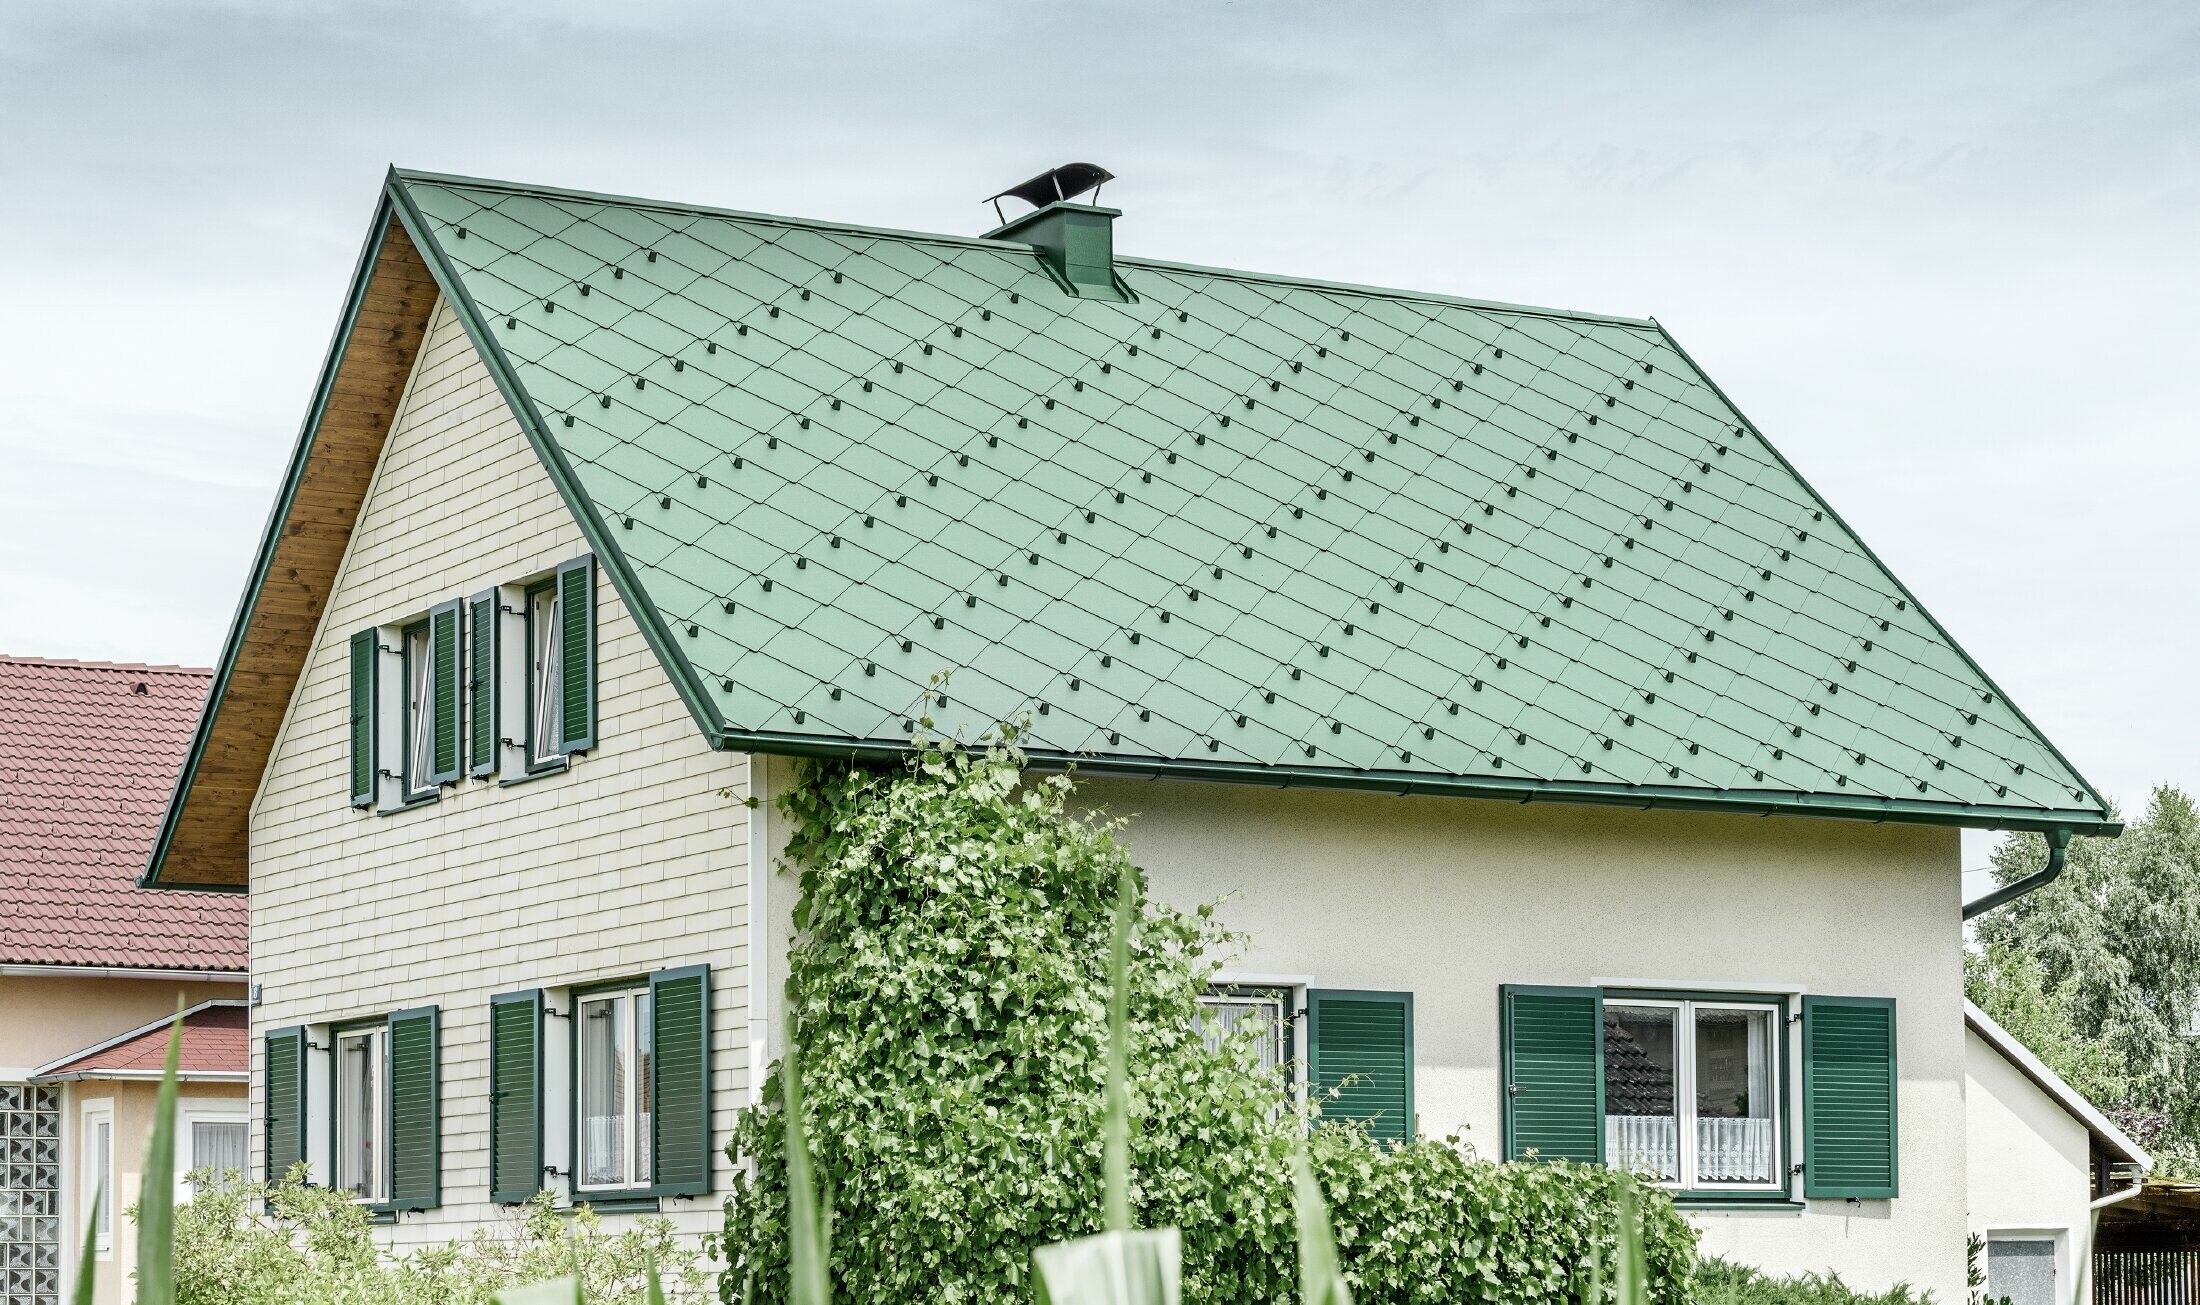 Casa unifamiliare classica con tetto a due falde con copertura in alluminio di colore verde muschio e  persiane verdi